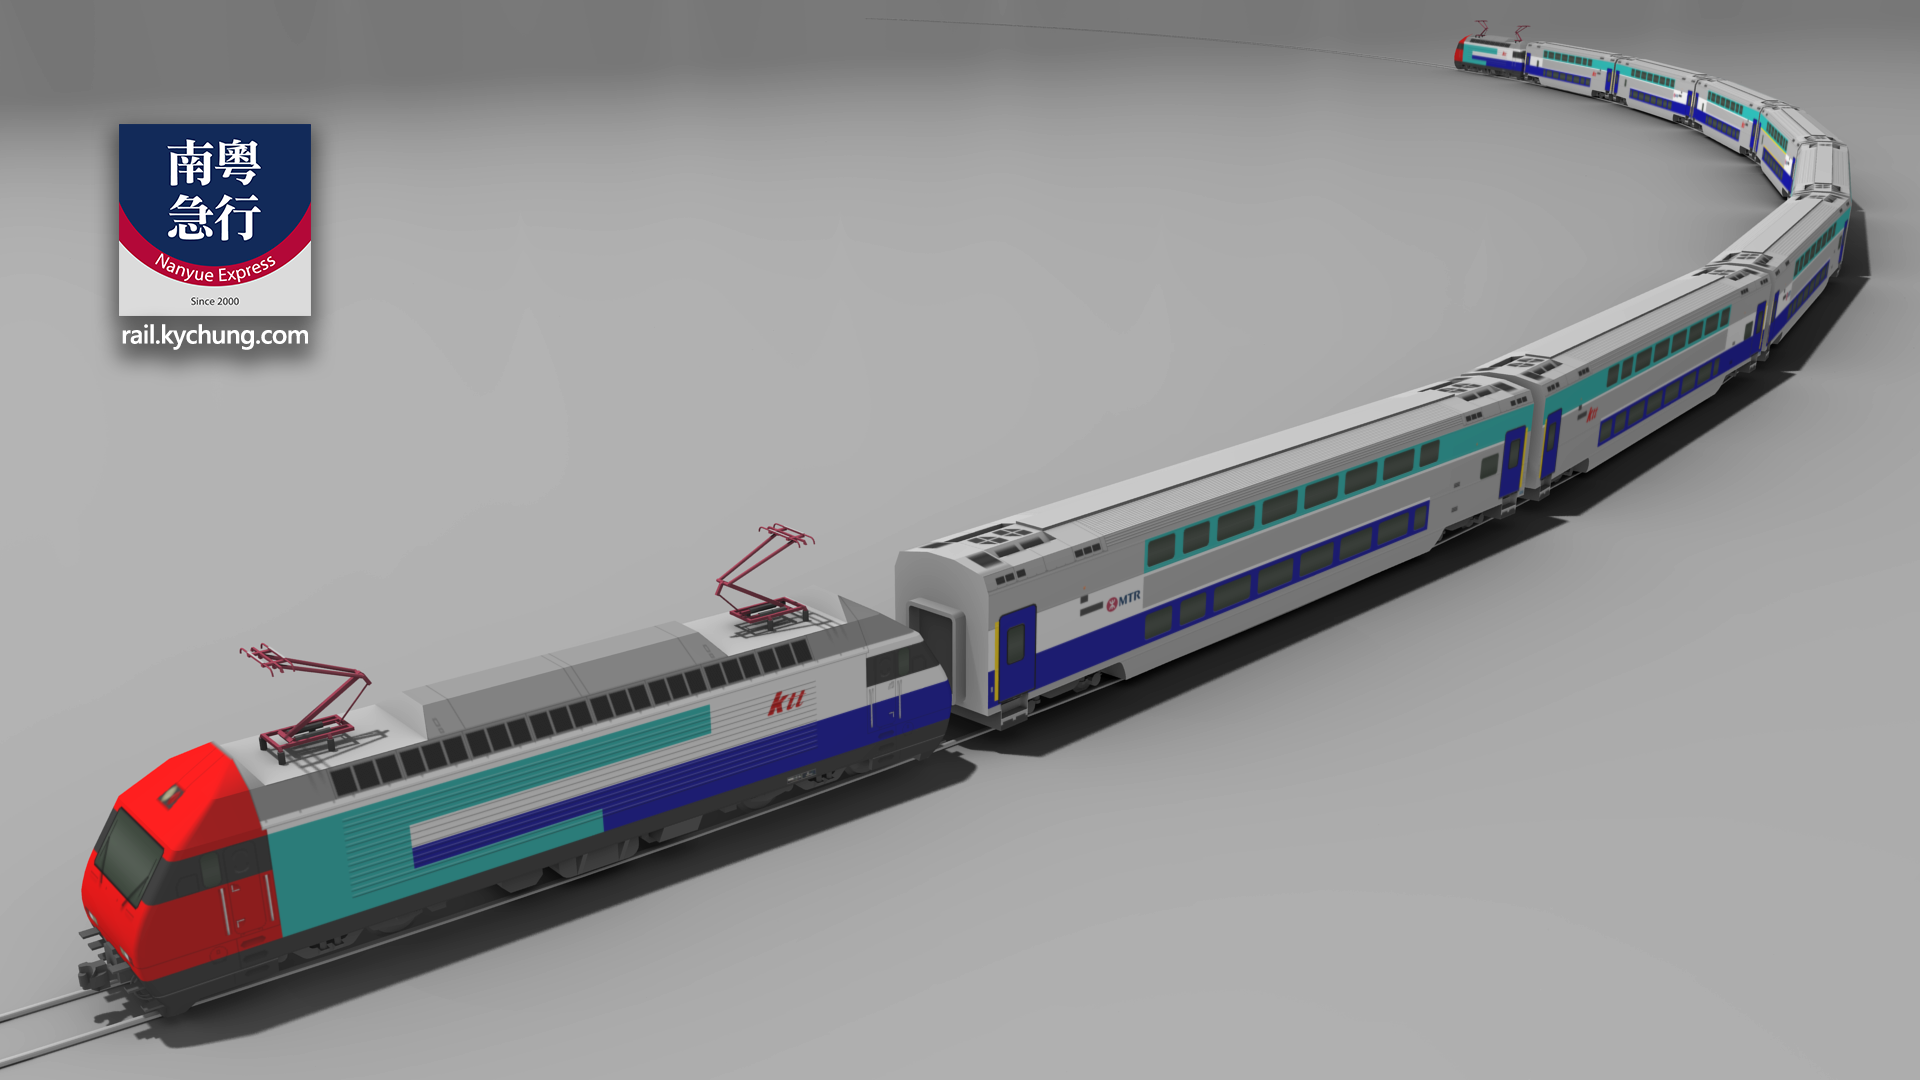 MTR ktt Trainset